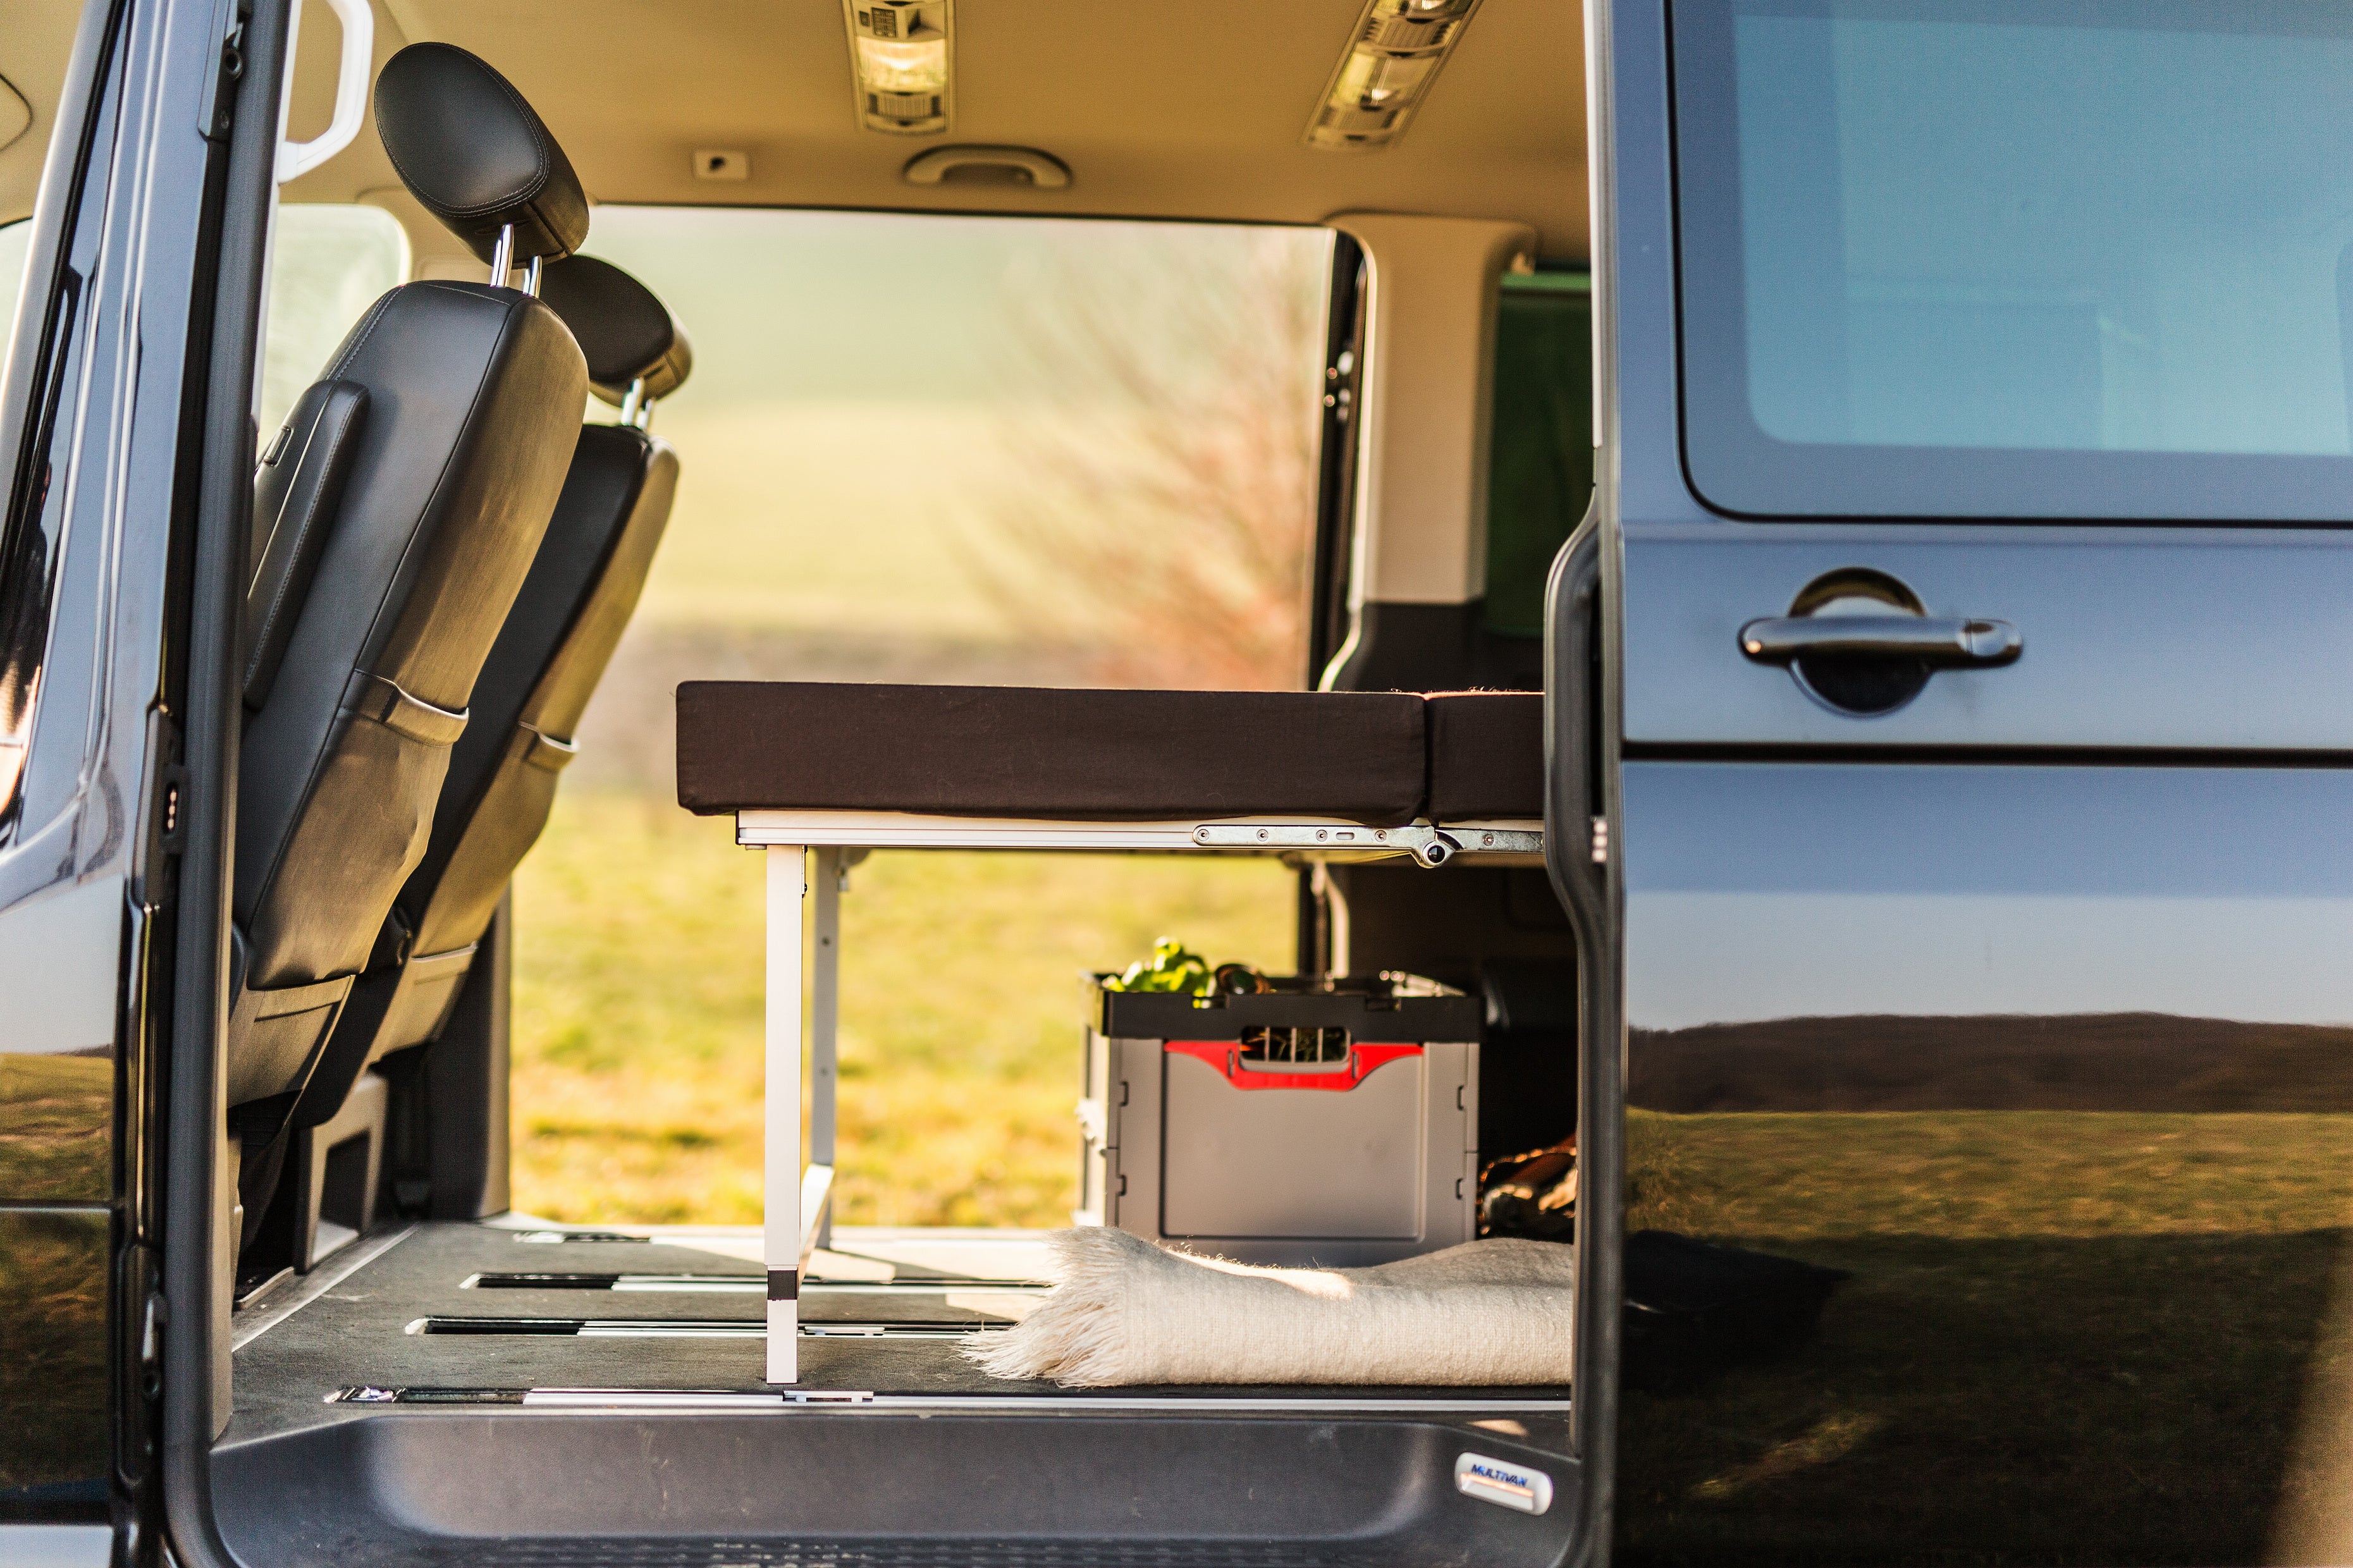 QUQUQ BusBox 1/2 – Campervan-Modul für Kleinbusse und Transporter